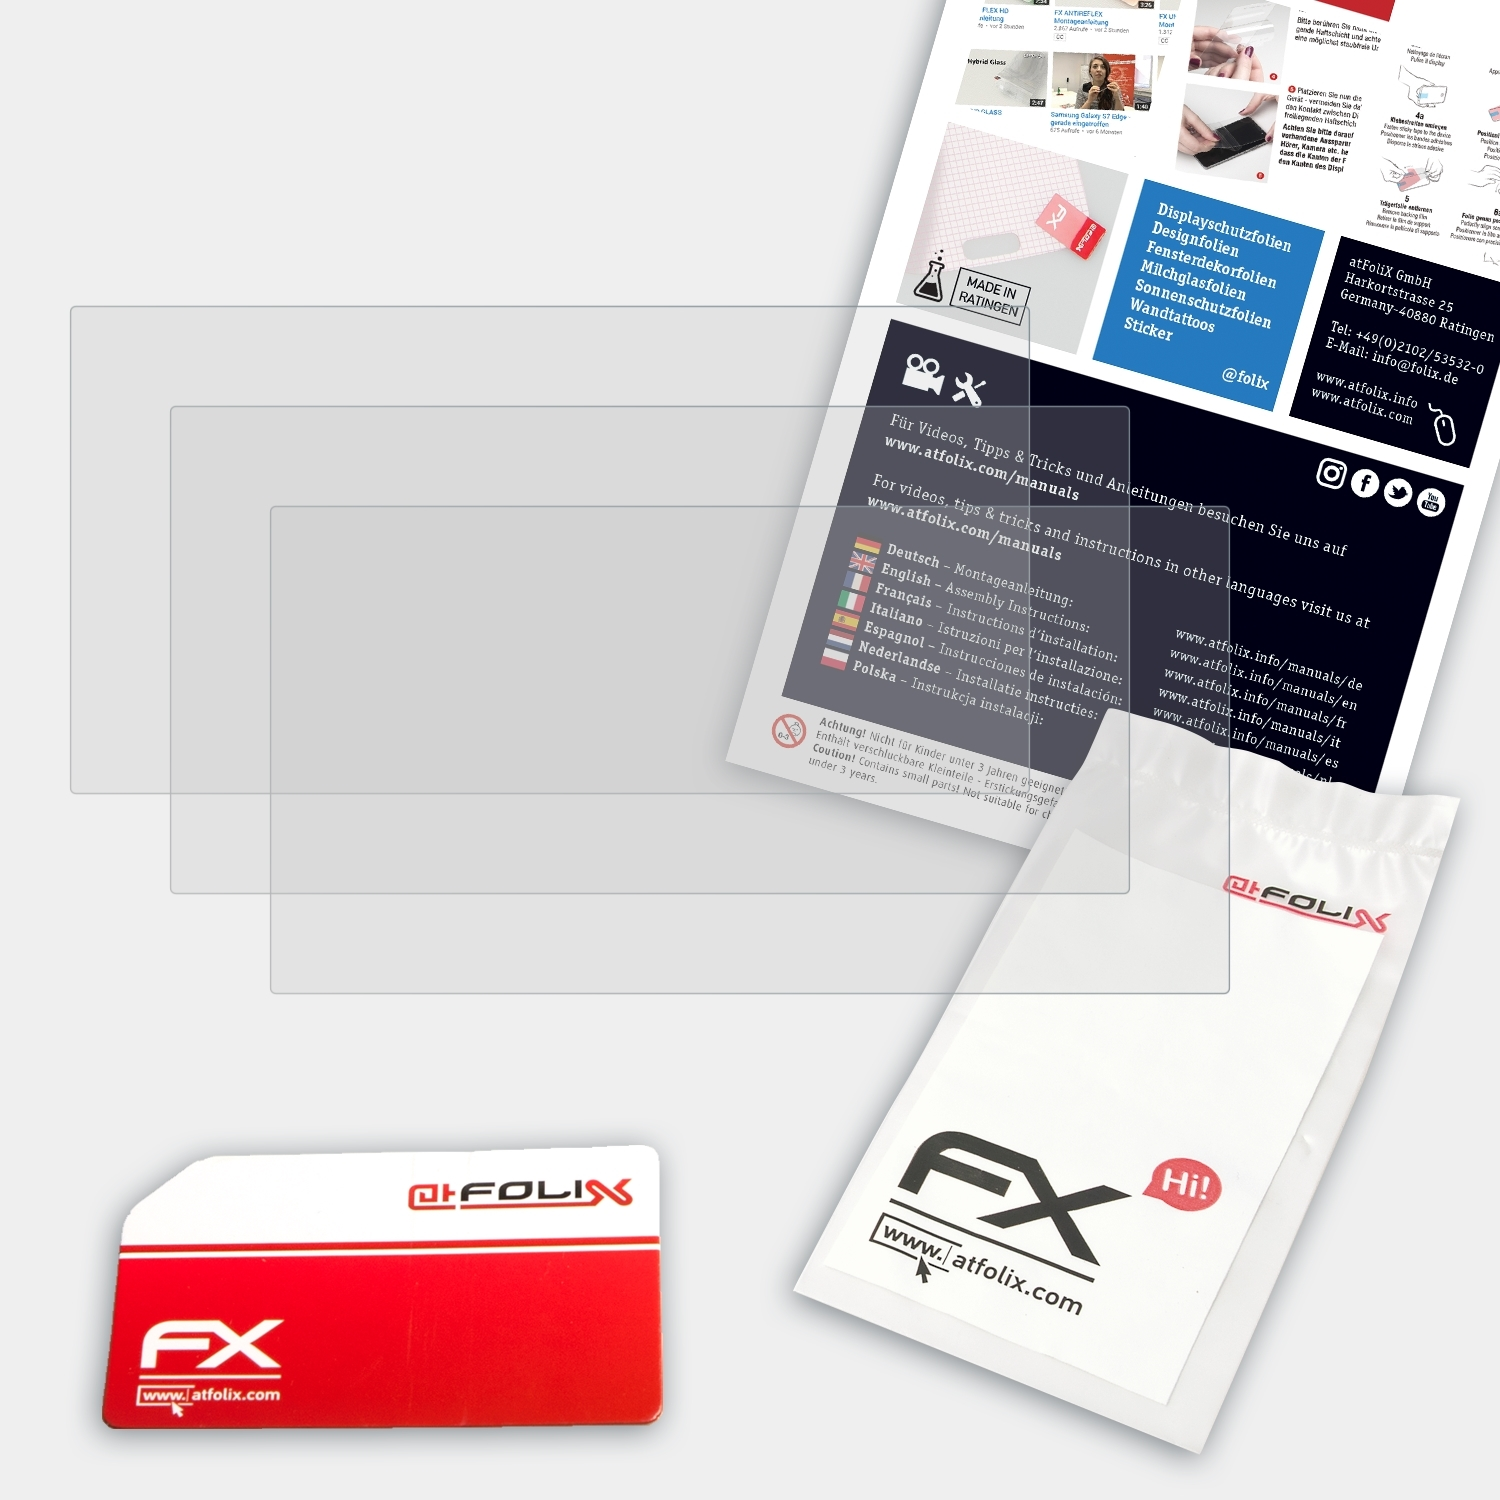 PD365) 3x Displayschutz(für ATFOLIX FX-Antireflex Hytera